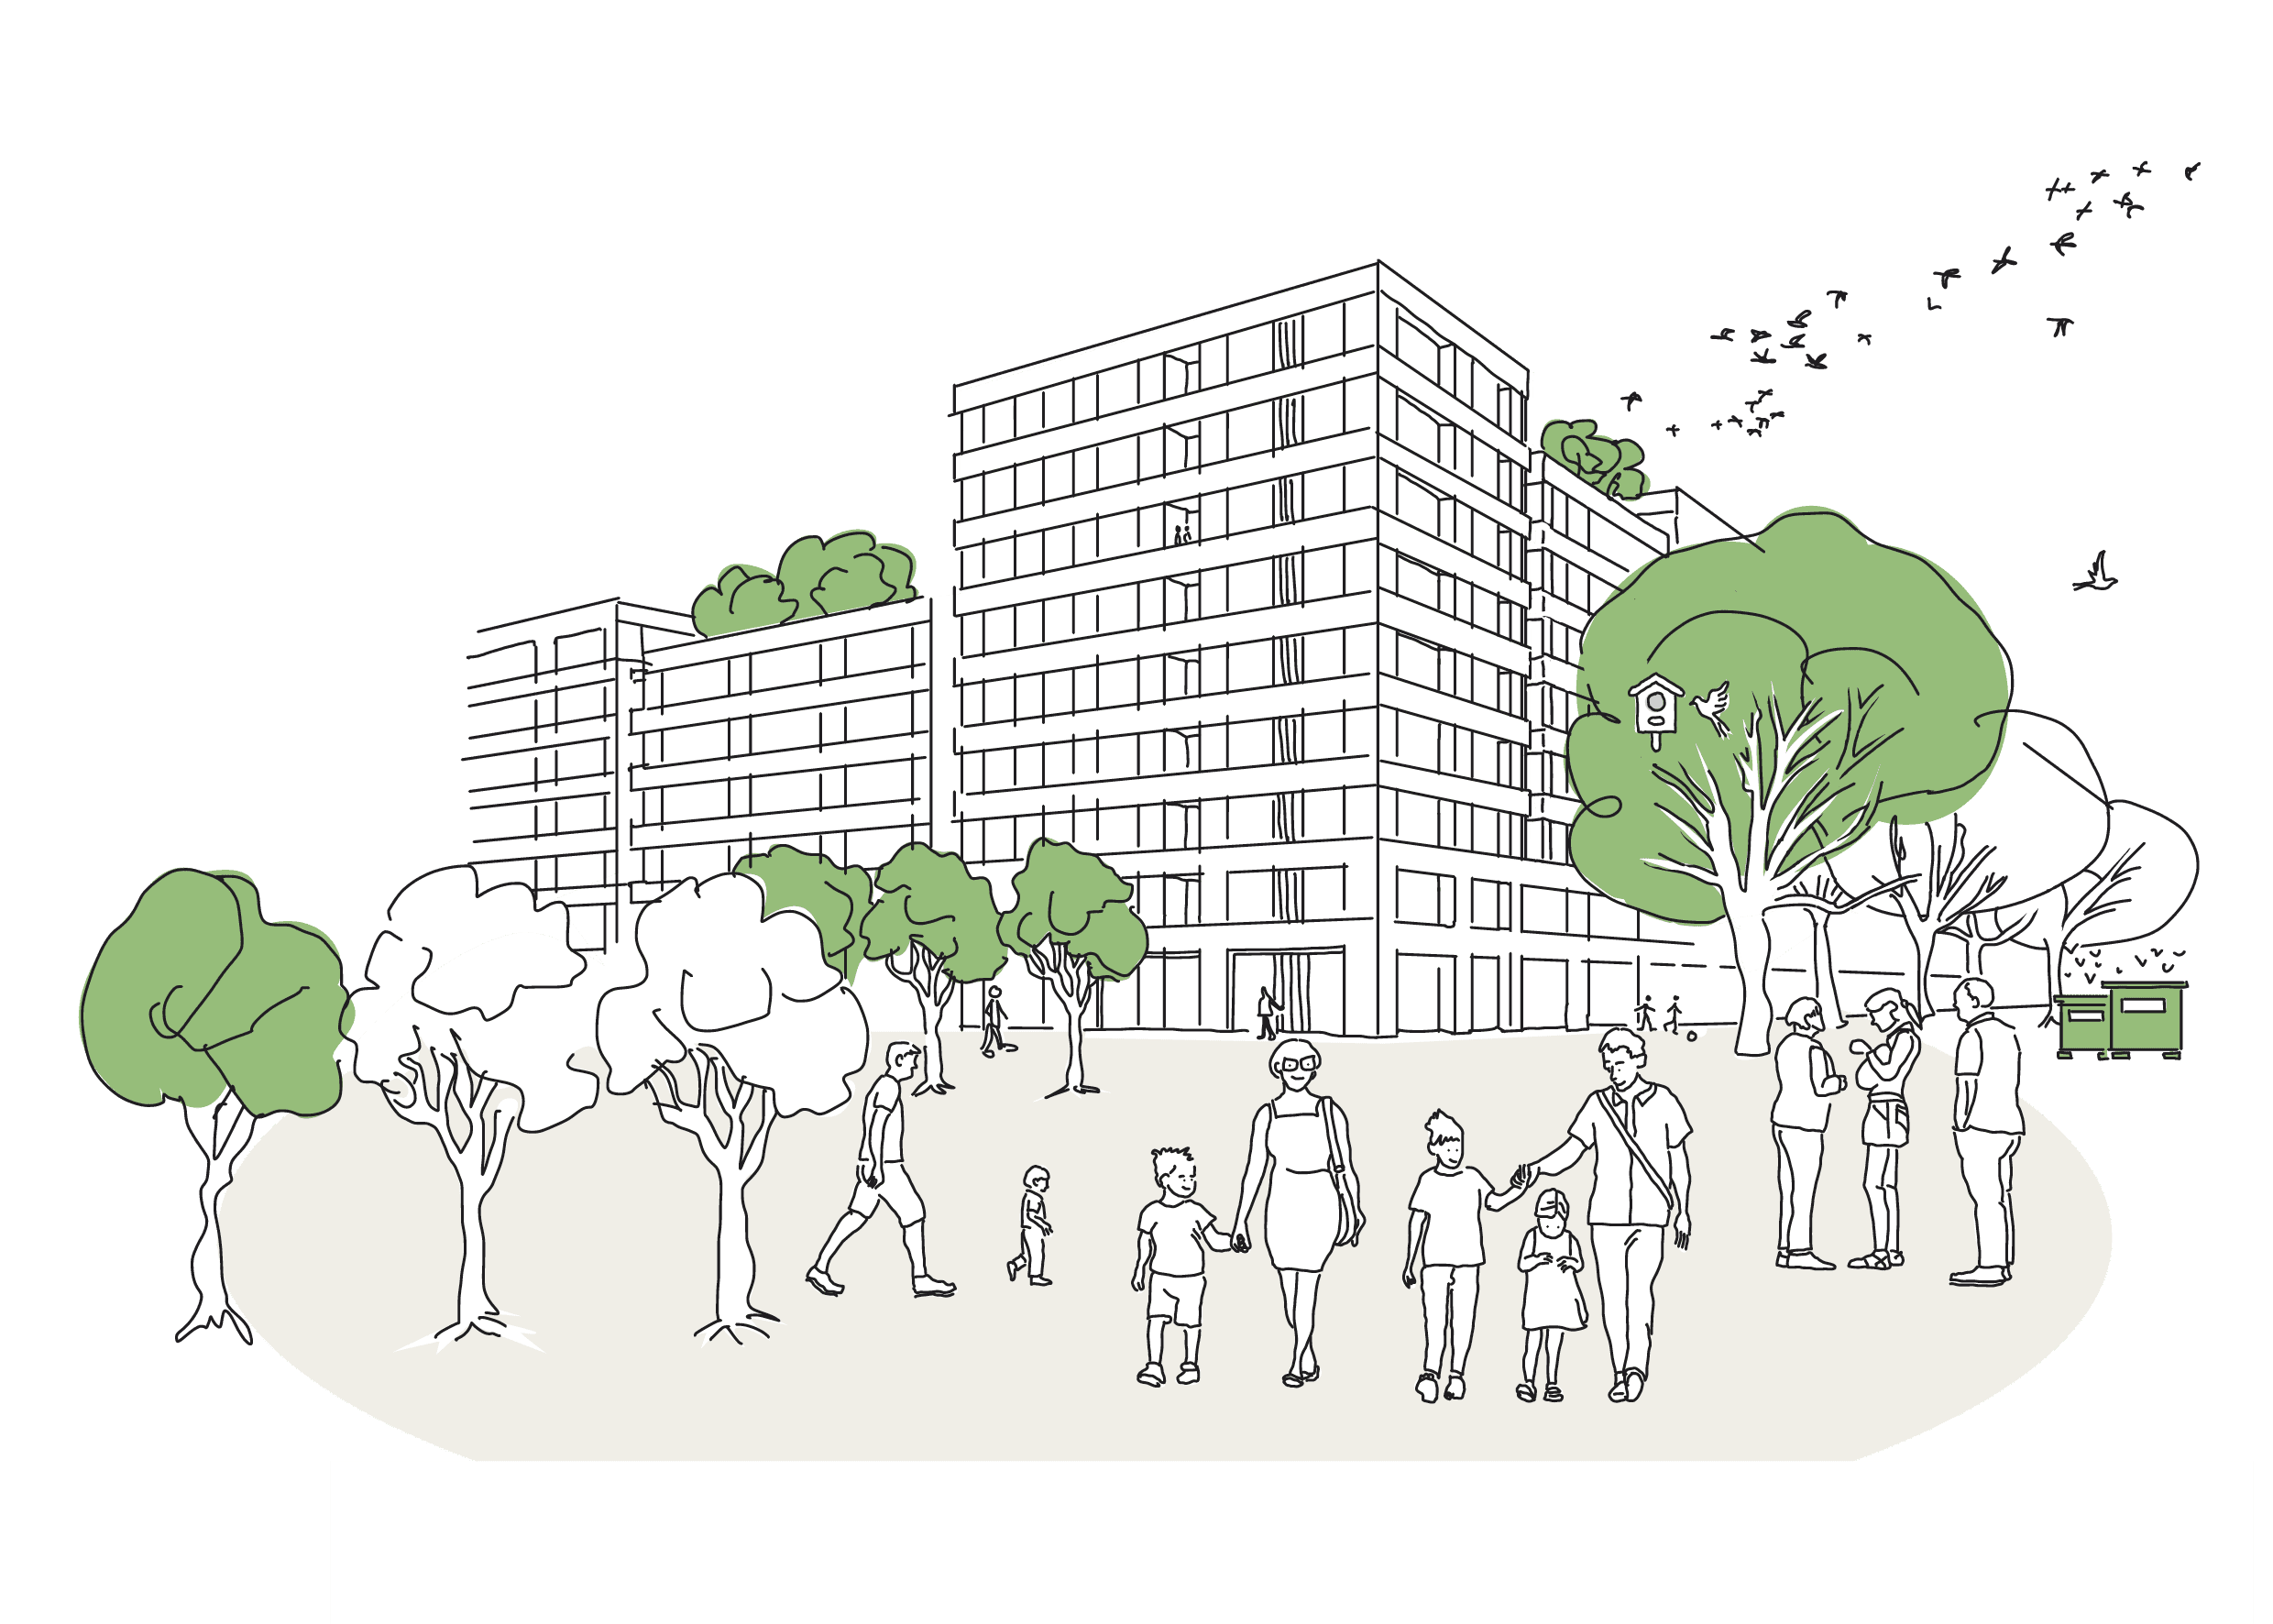 Illustration Nachhaltig + klimagerecht. Menschen im Grünen mit Häusern und begrünten Dachterrassen im Hintergrund